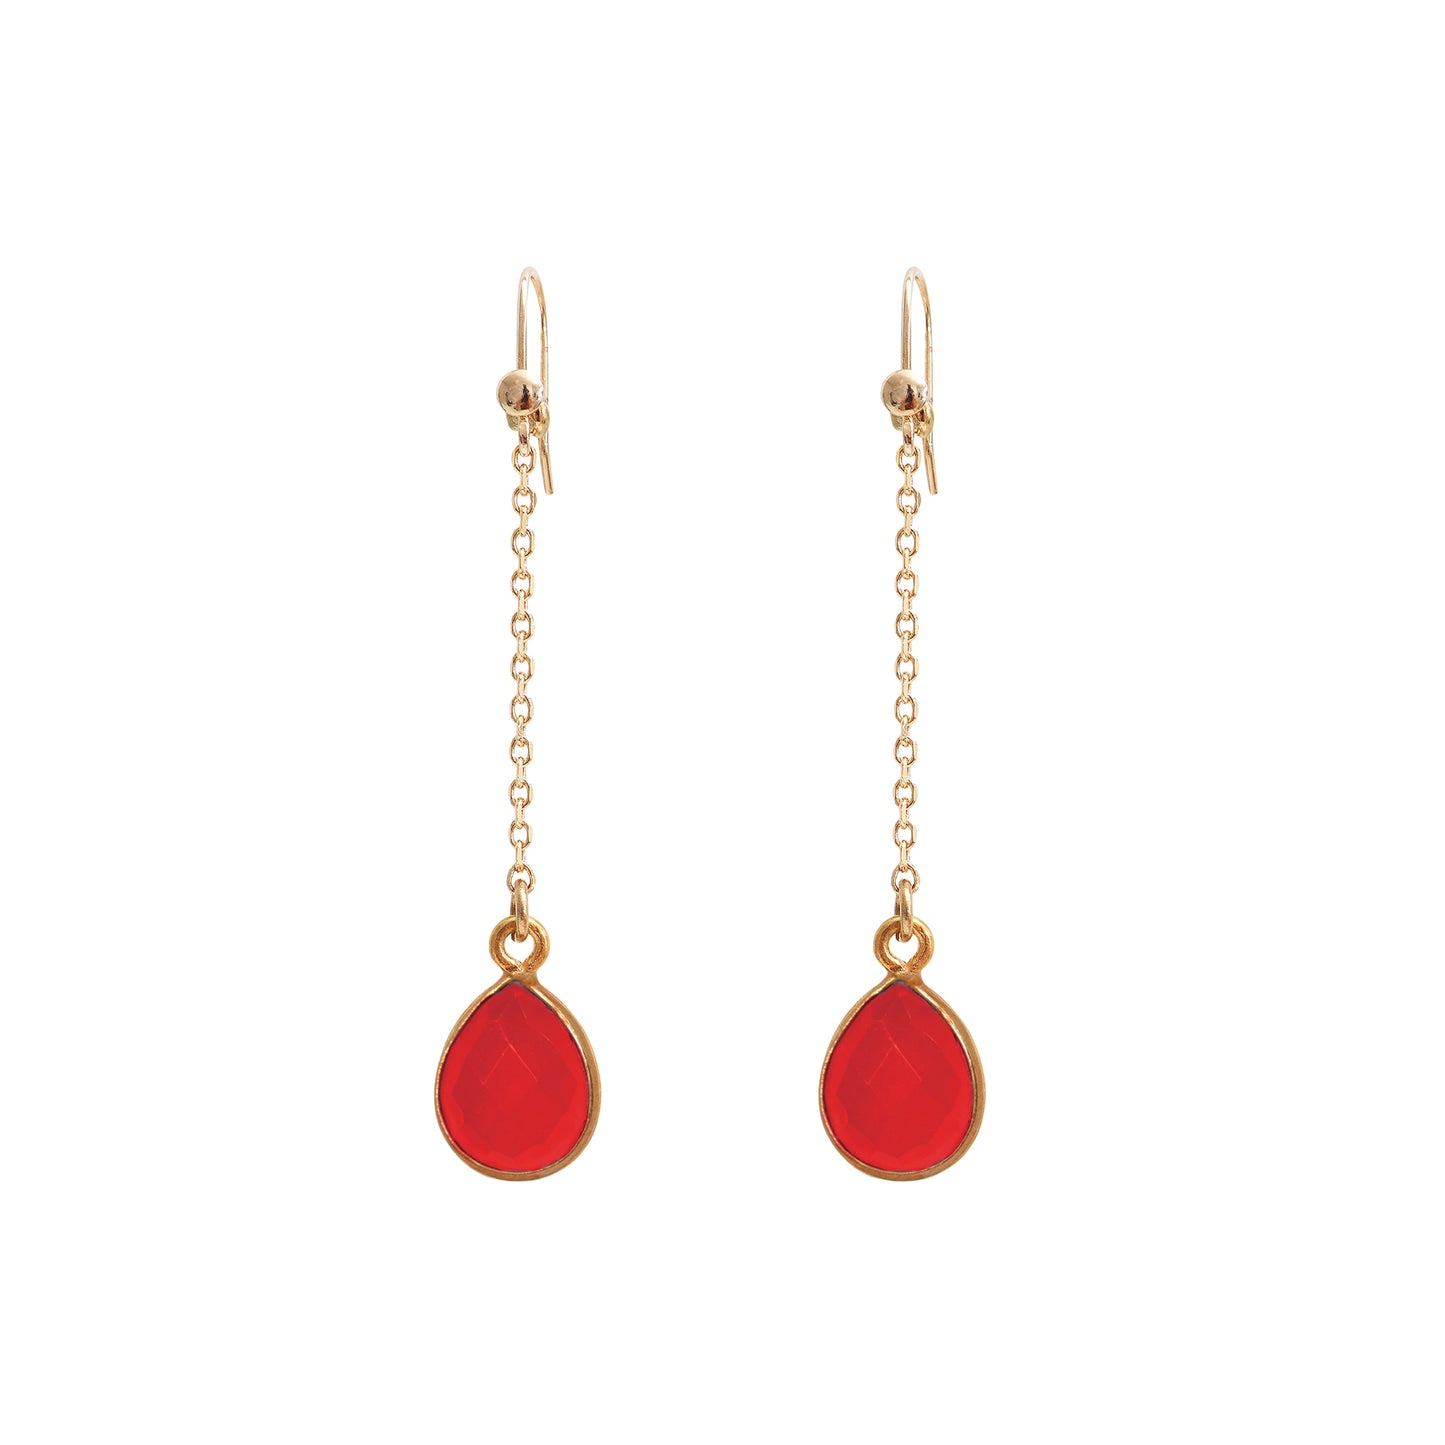 Boucles d’oreilles pendantes Nilaï avec chaine et orné d’une pierre agate rouge